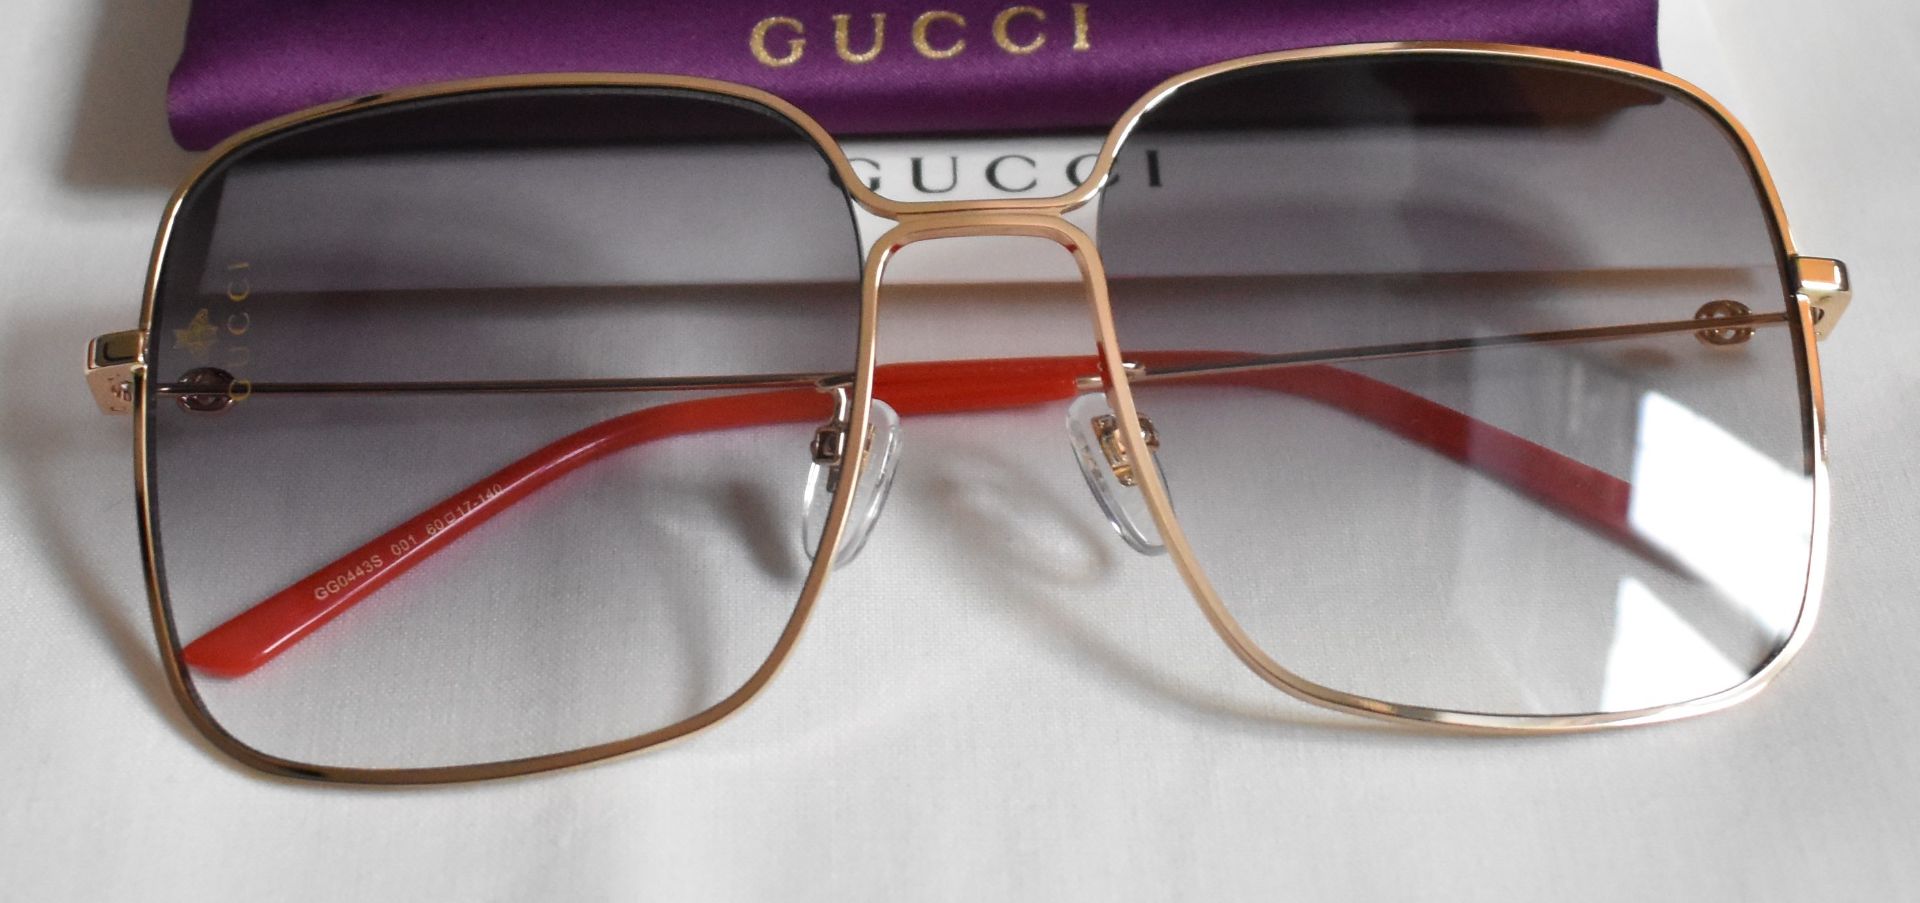 Gucci GG0443S 001 Women Sunglasses - Image 2 of 4